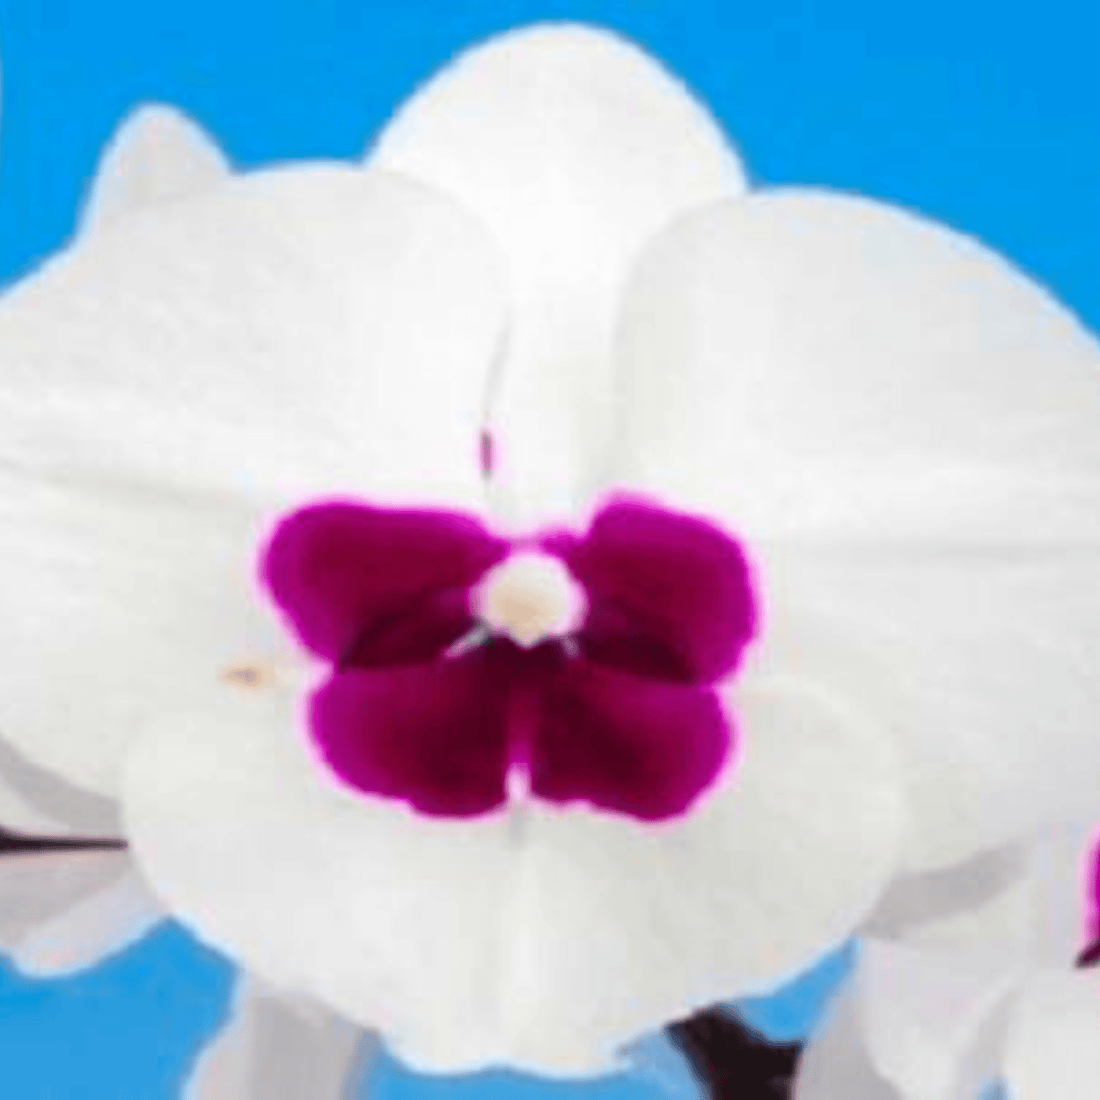 Doritaenopsis Fuller’s ‘89323’ - Blooming Size